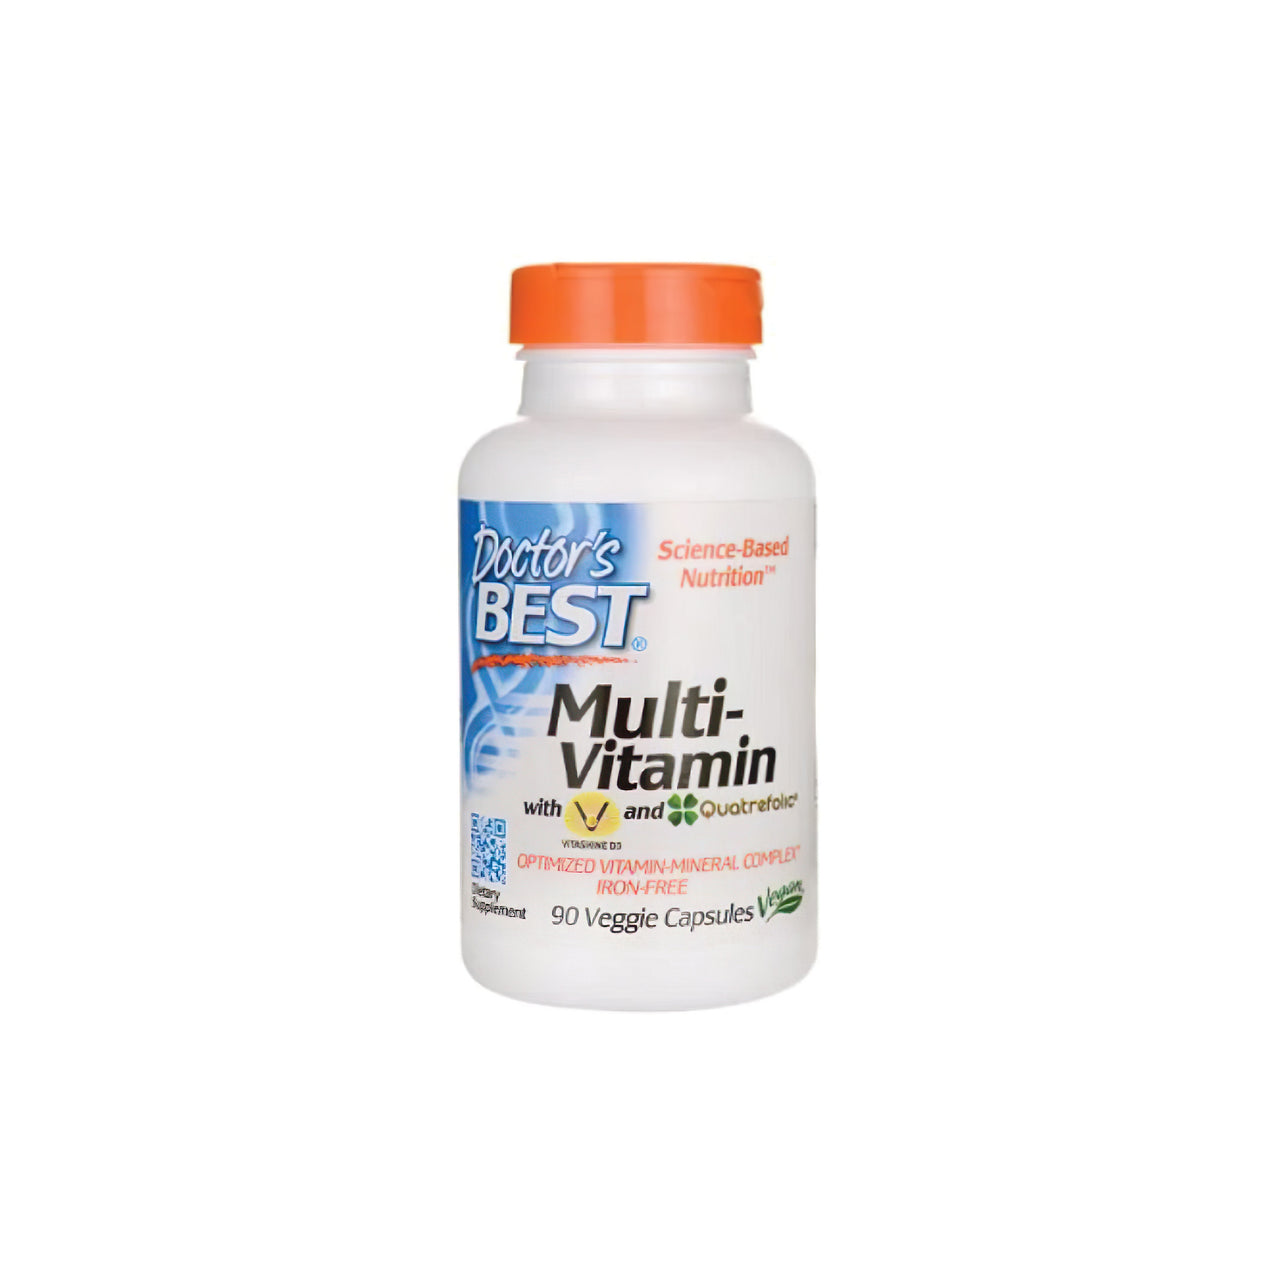 Le meilleur Doctor's Best Multivitamine 90 gélules végétales pour soutenir le système immunitaire, rempli de minéraux essentiels, présenté sur un fond blanc.